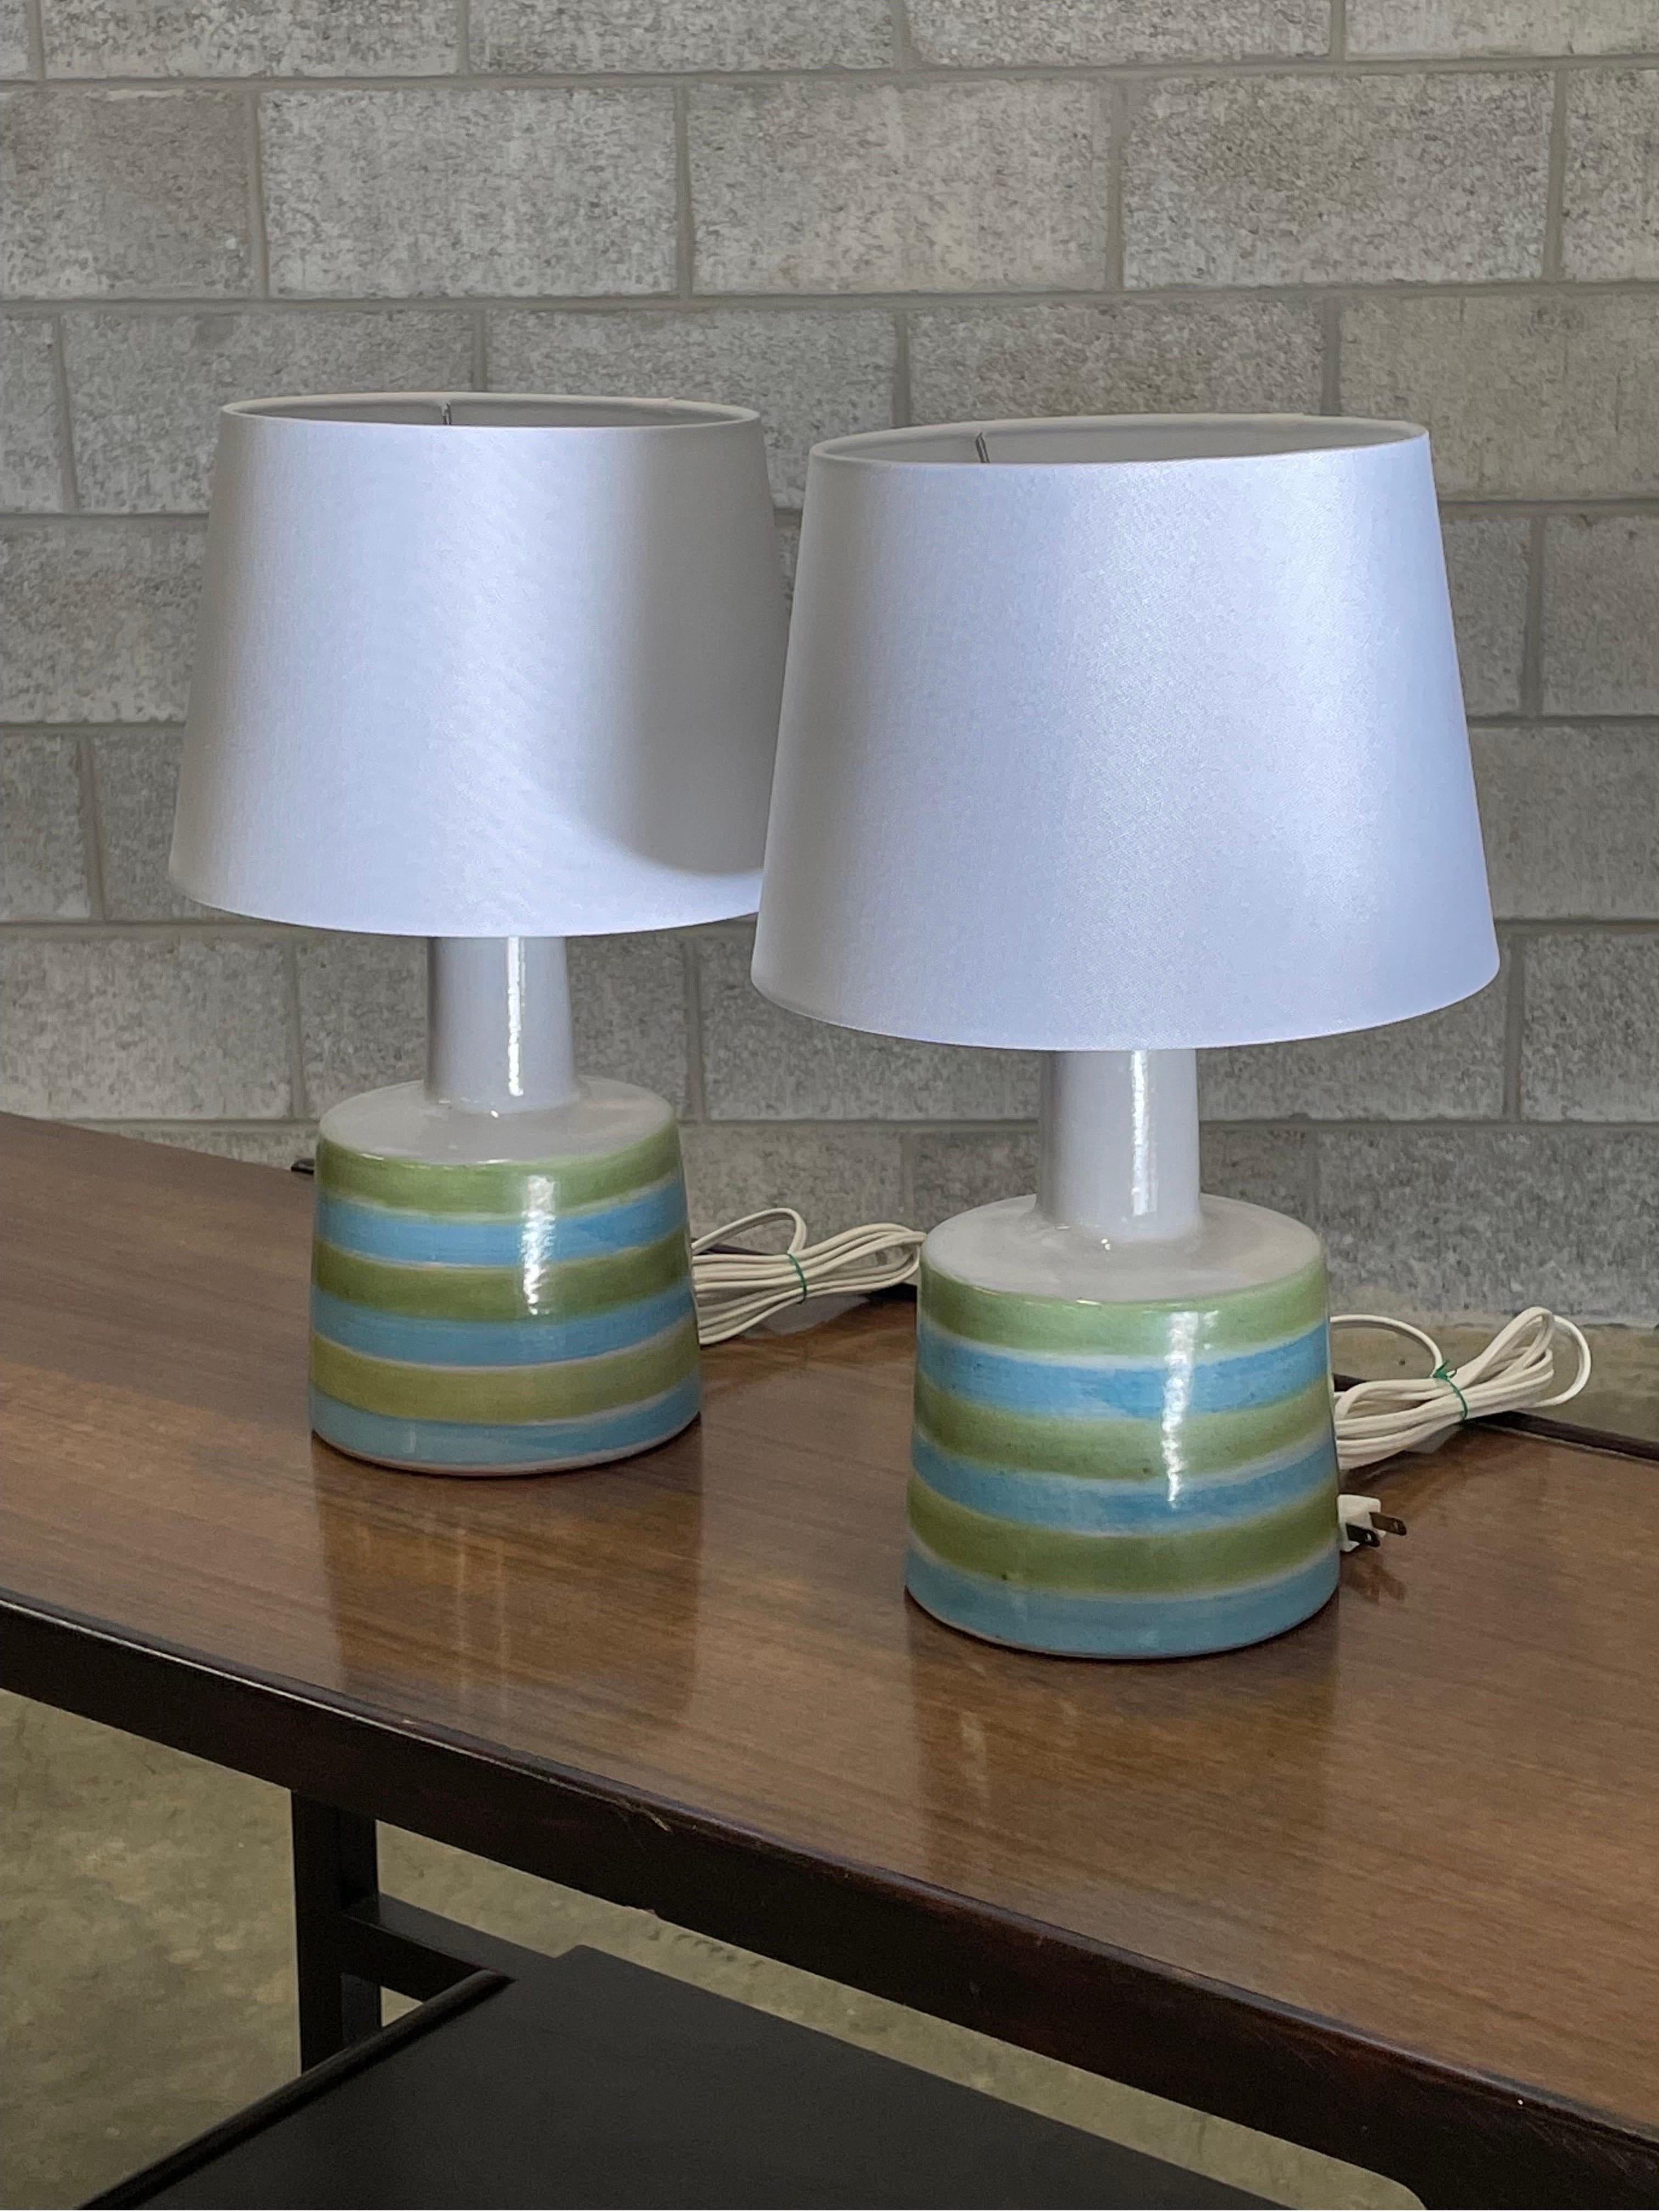 Lampes de table conçues par le duo de céramistes Jane et Gordon Martz pour Marshall Studios. La couleur est un corps principal blanc avec des rayures vertes et bleues.

Dimensions totales : 16